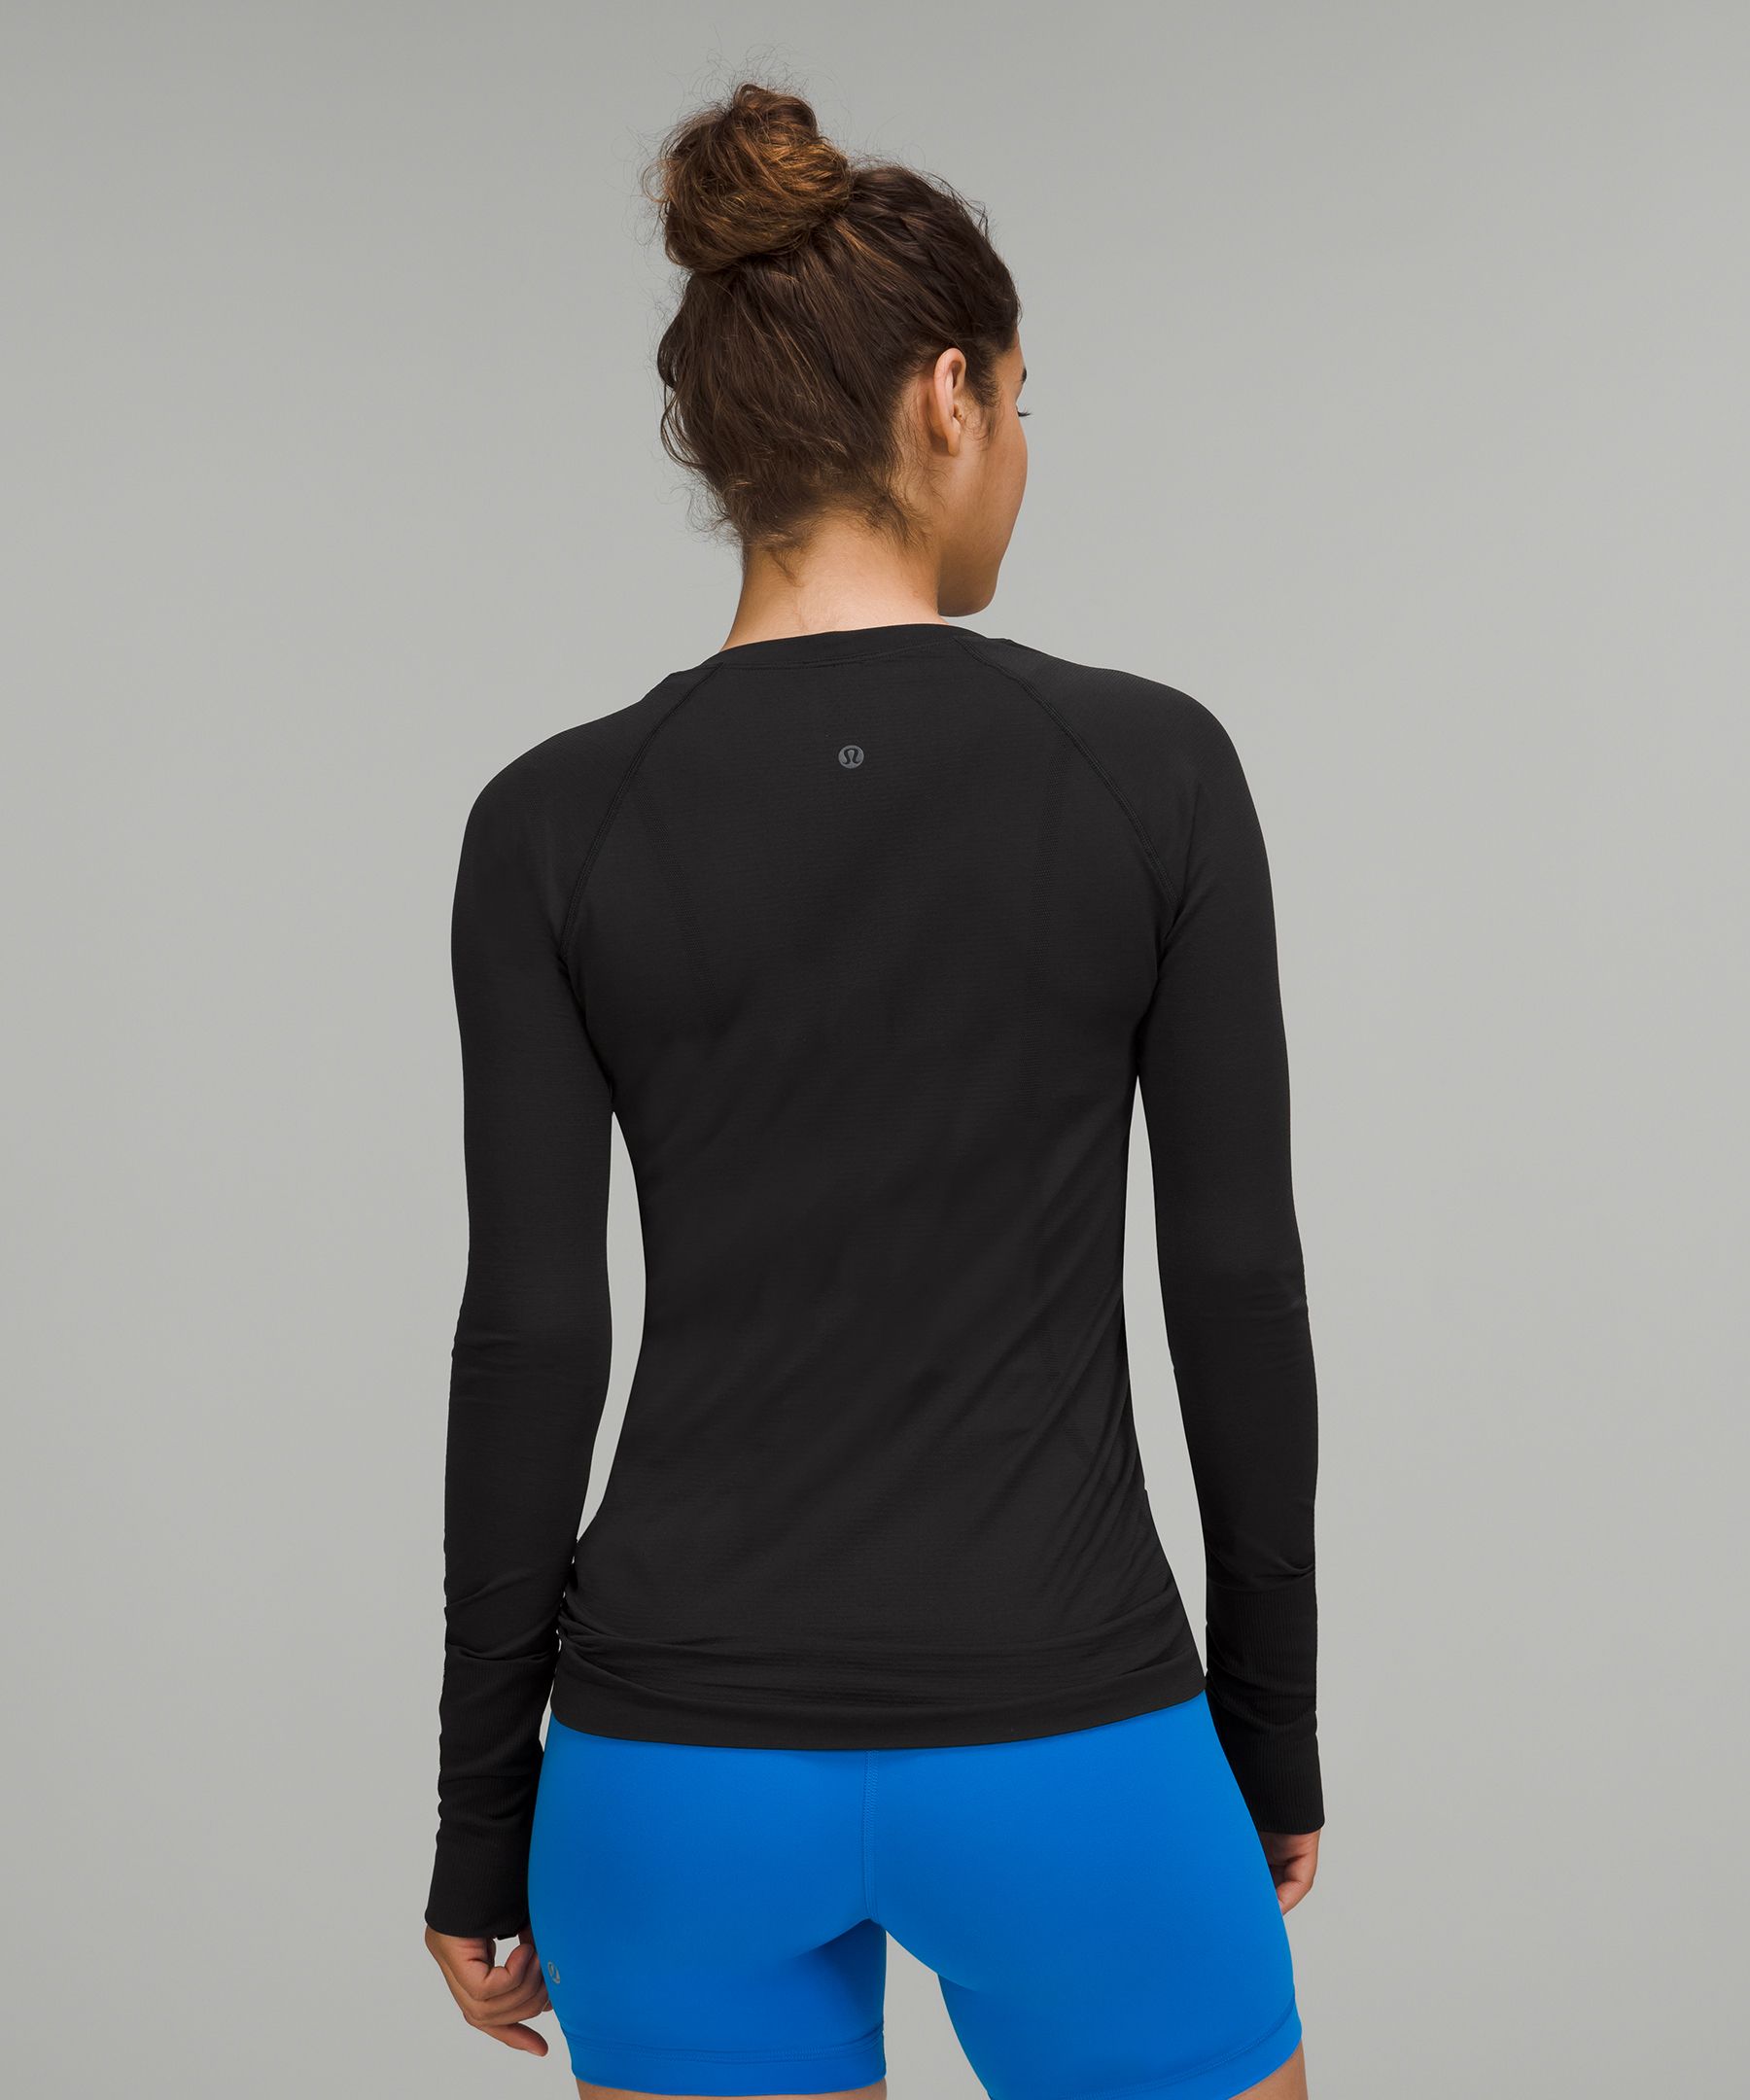 lululemon athletica Ellie Long Sleeve Sports Top in Black